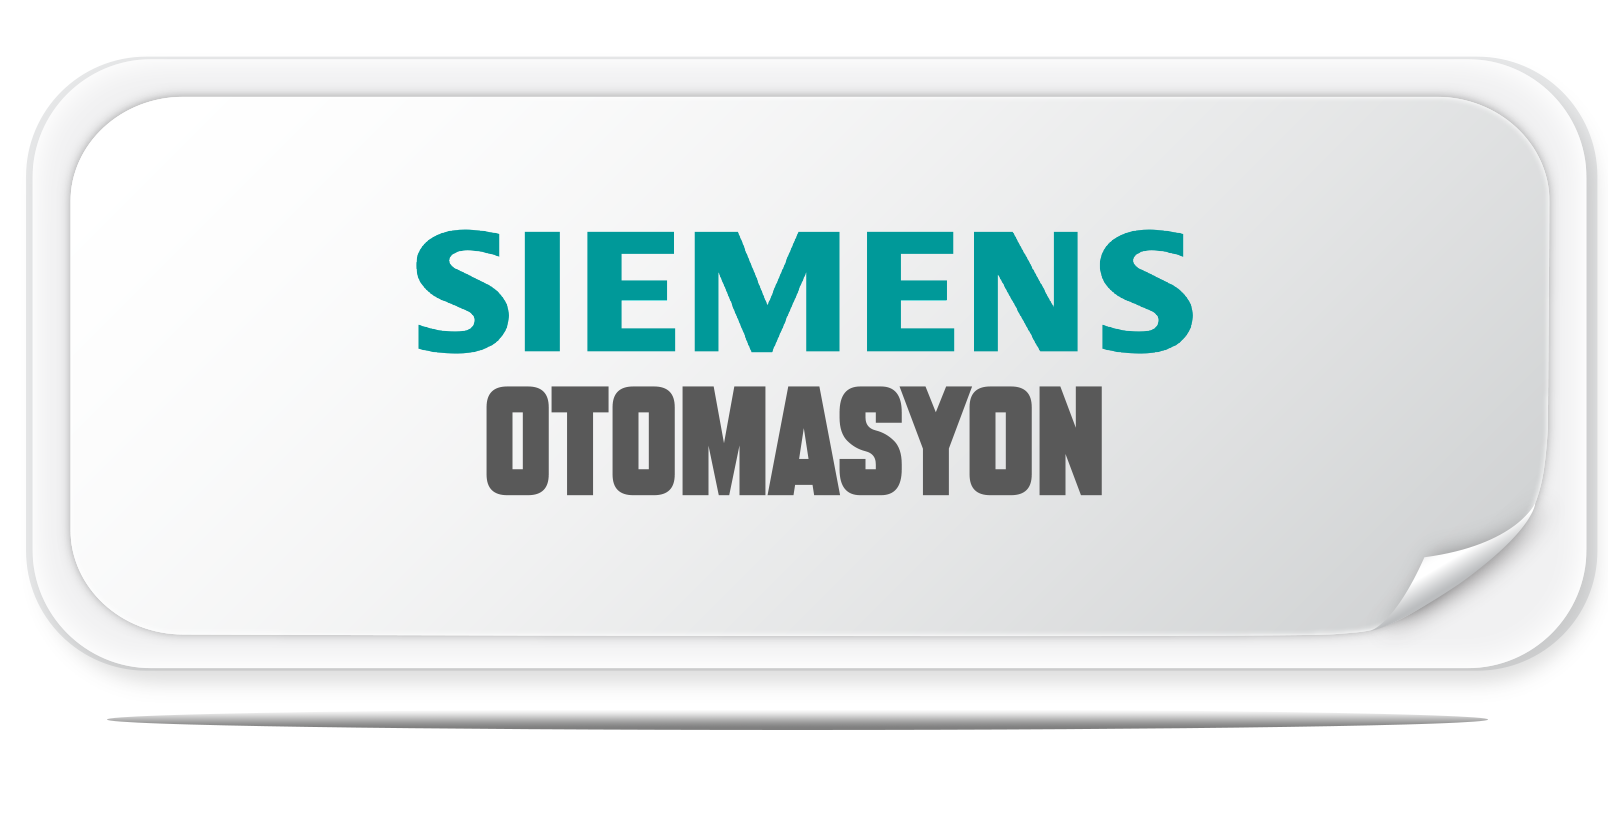 SIEMENS OTOMASYON